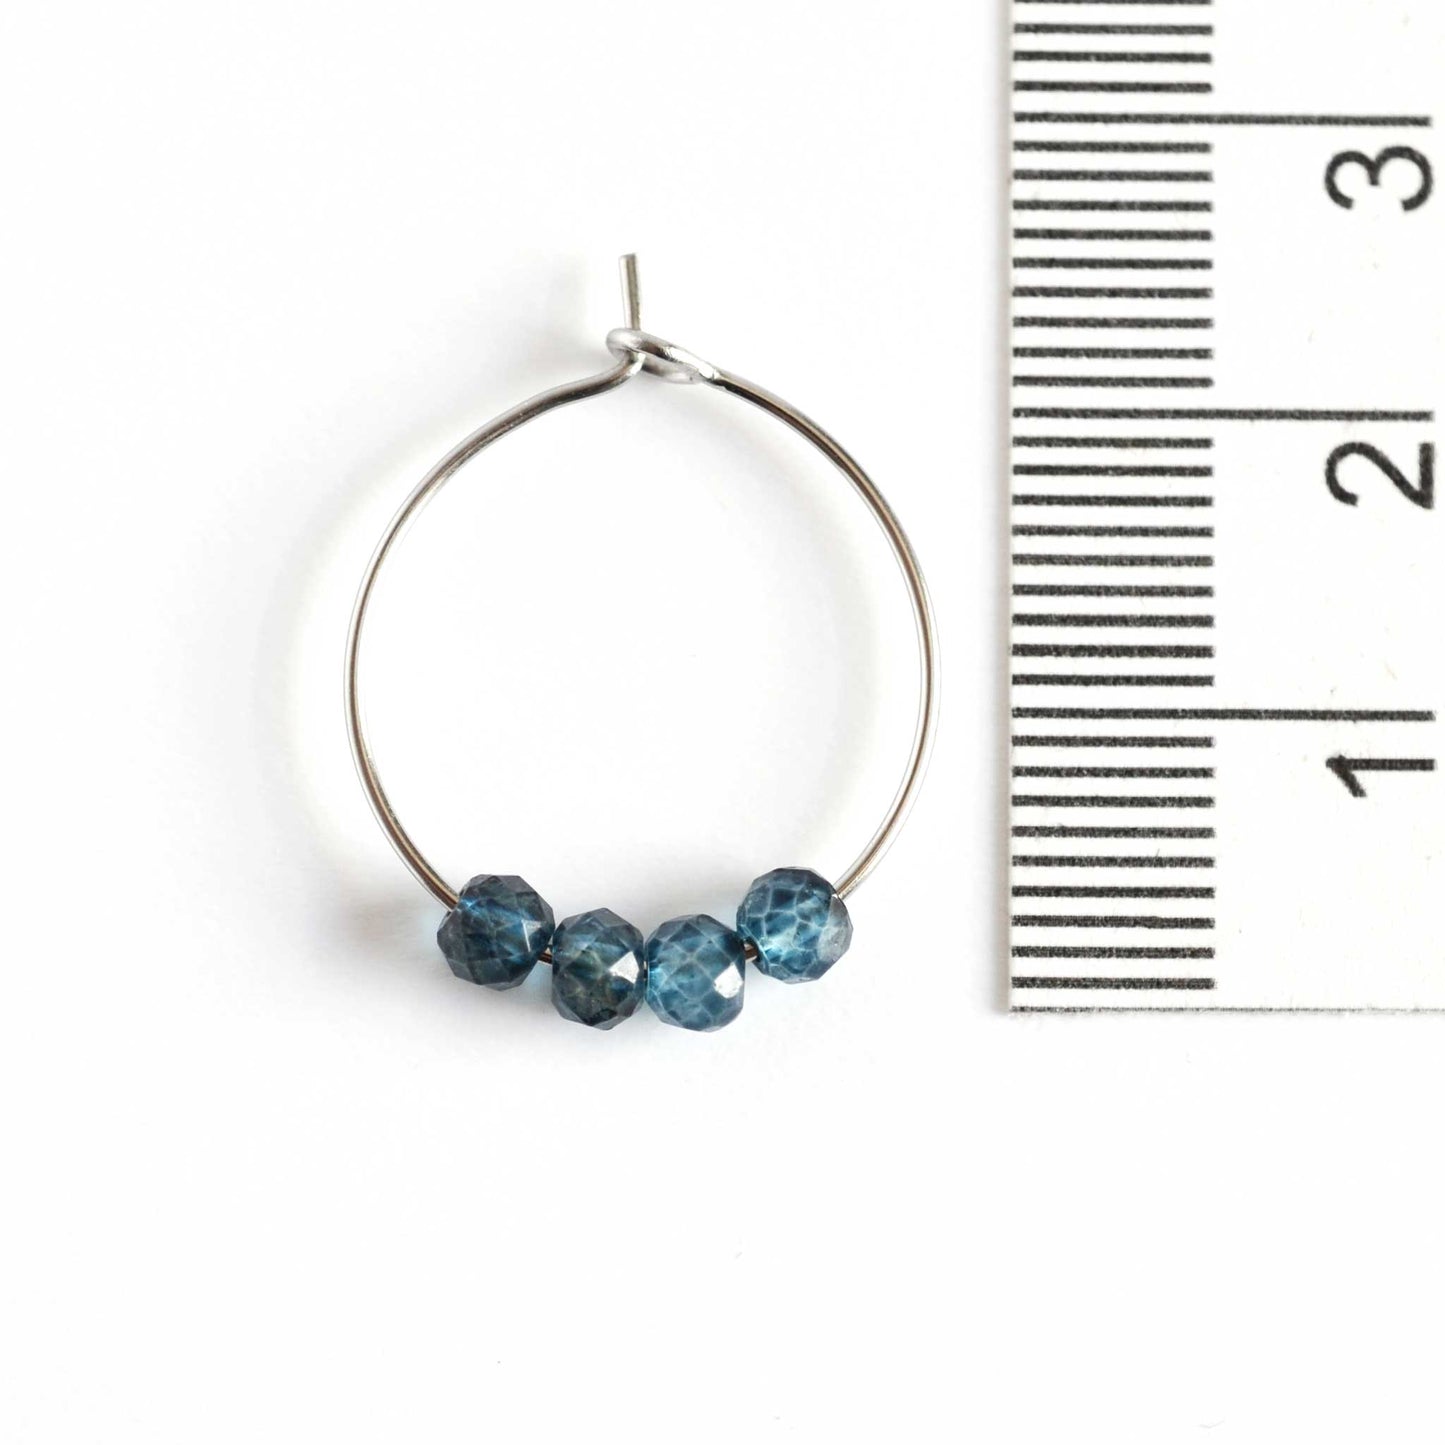 2cm diameter blue Topaz hoop earring next to ruler